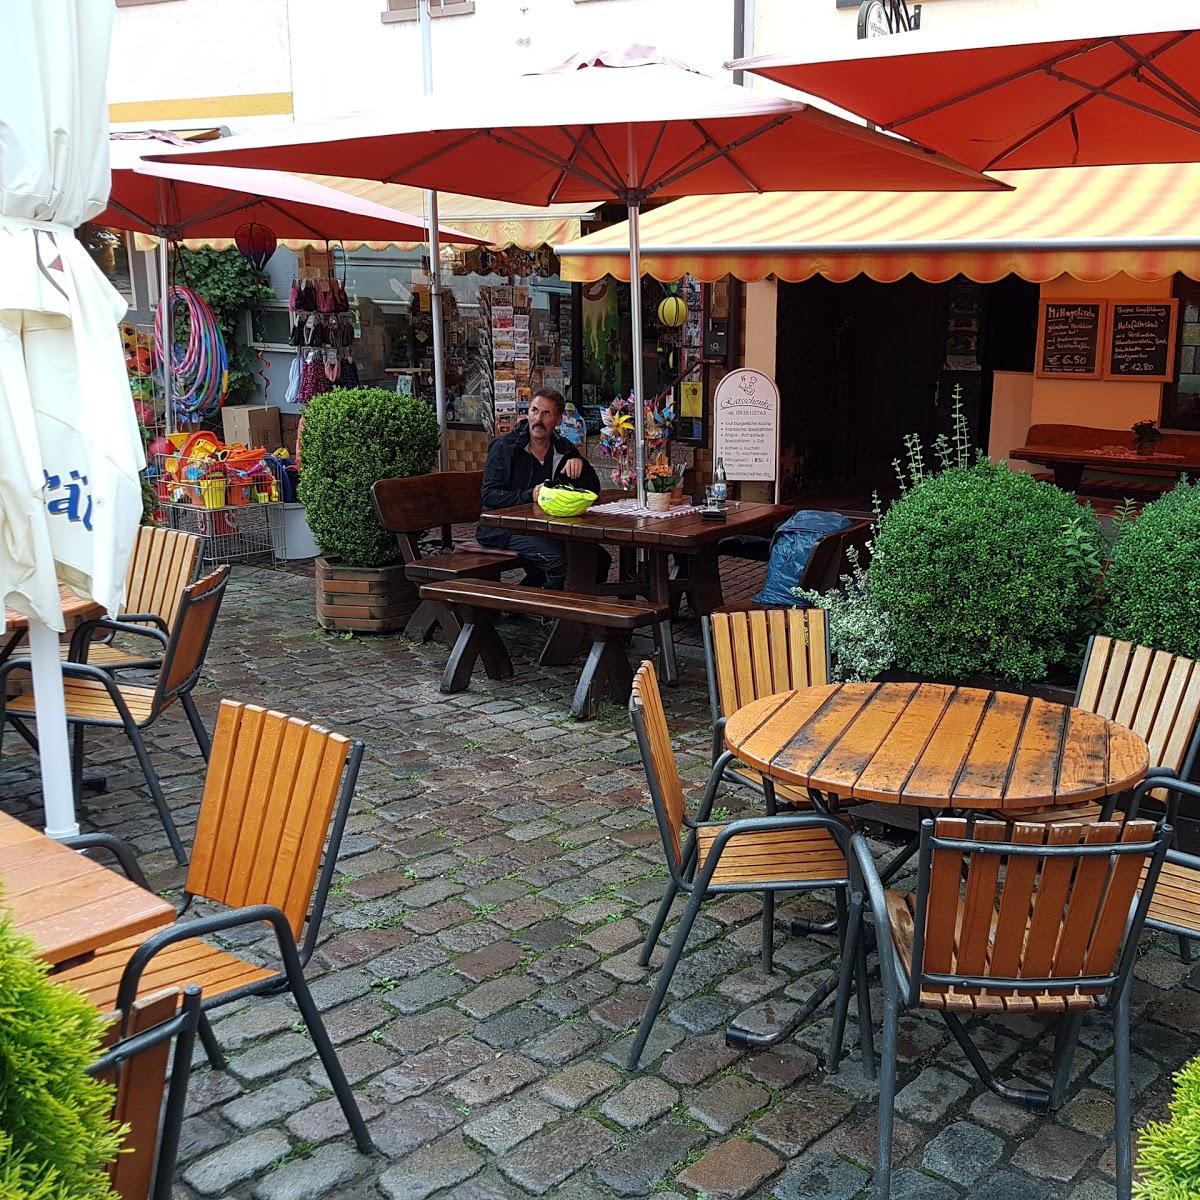 Restaurant "Ratsschenke" in Frankfurt am Main